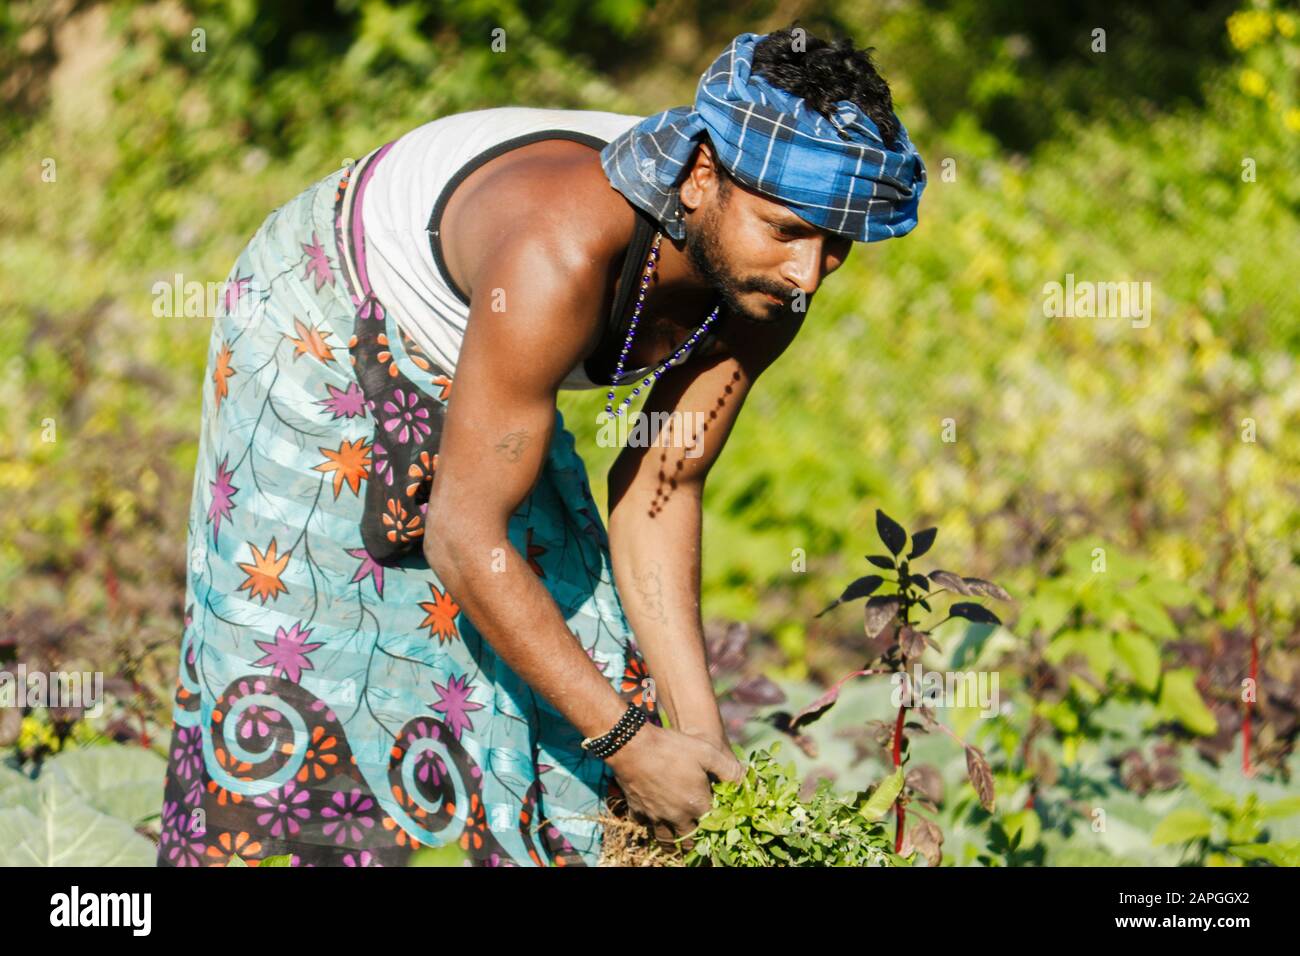 El granjero indio que cuida para el cultivo potato.Farmer extirpa la hierba en el jardín de la patata. Foto de stock